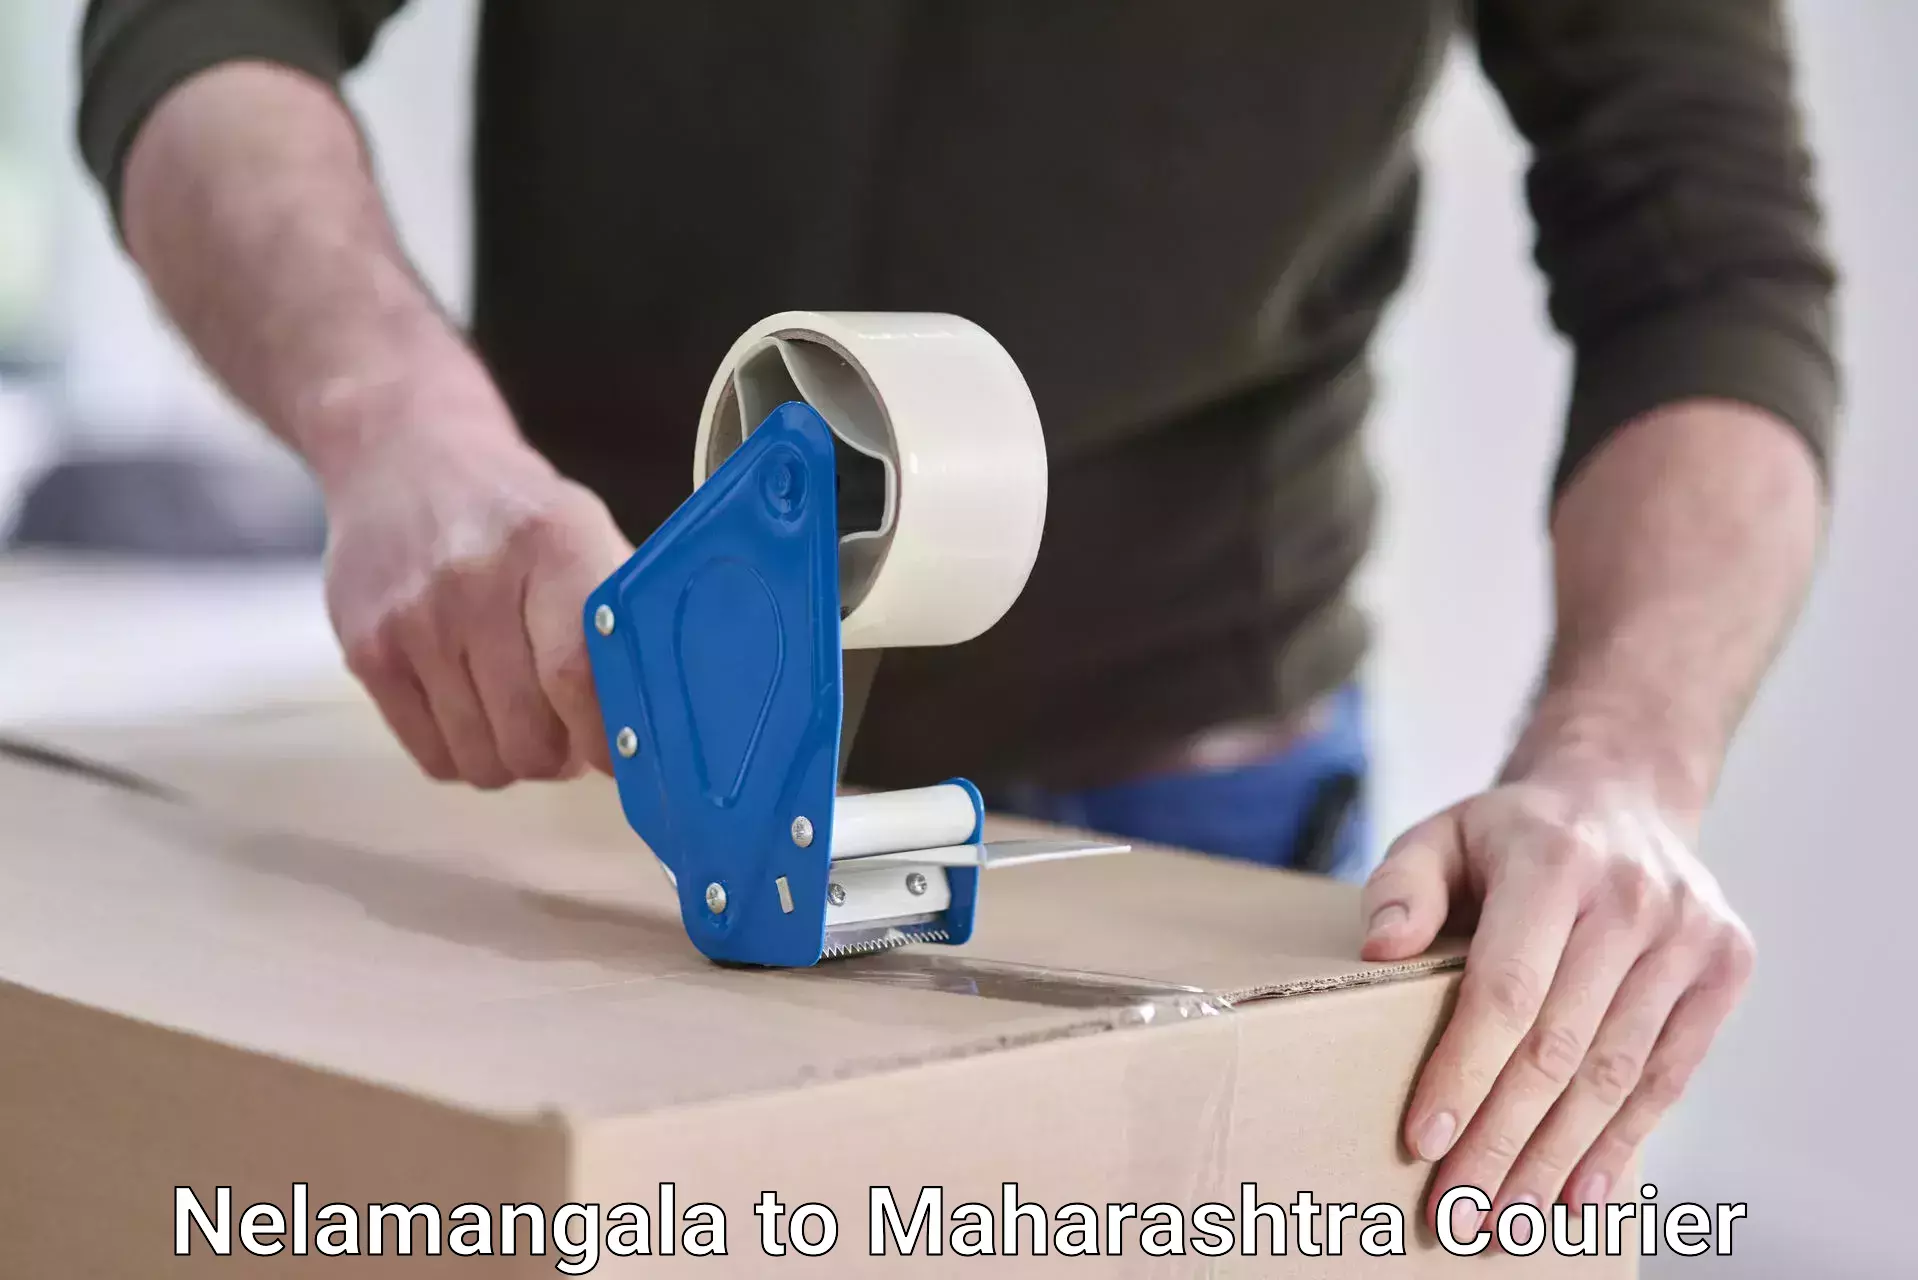 Global shipping solutions Nelamangala to Maharashtra